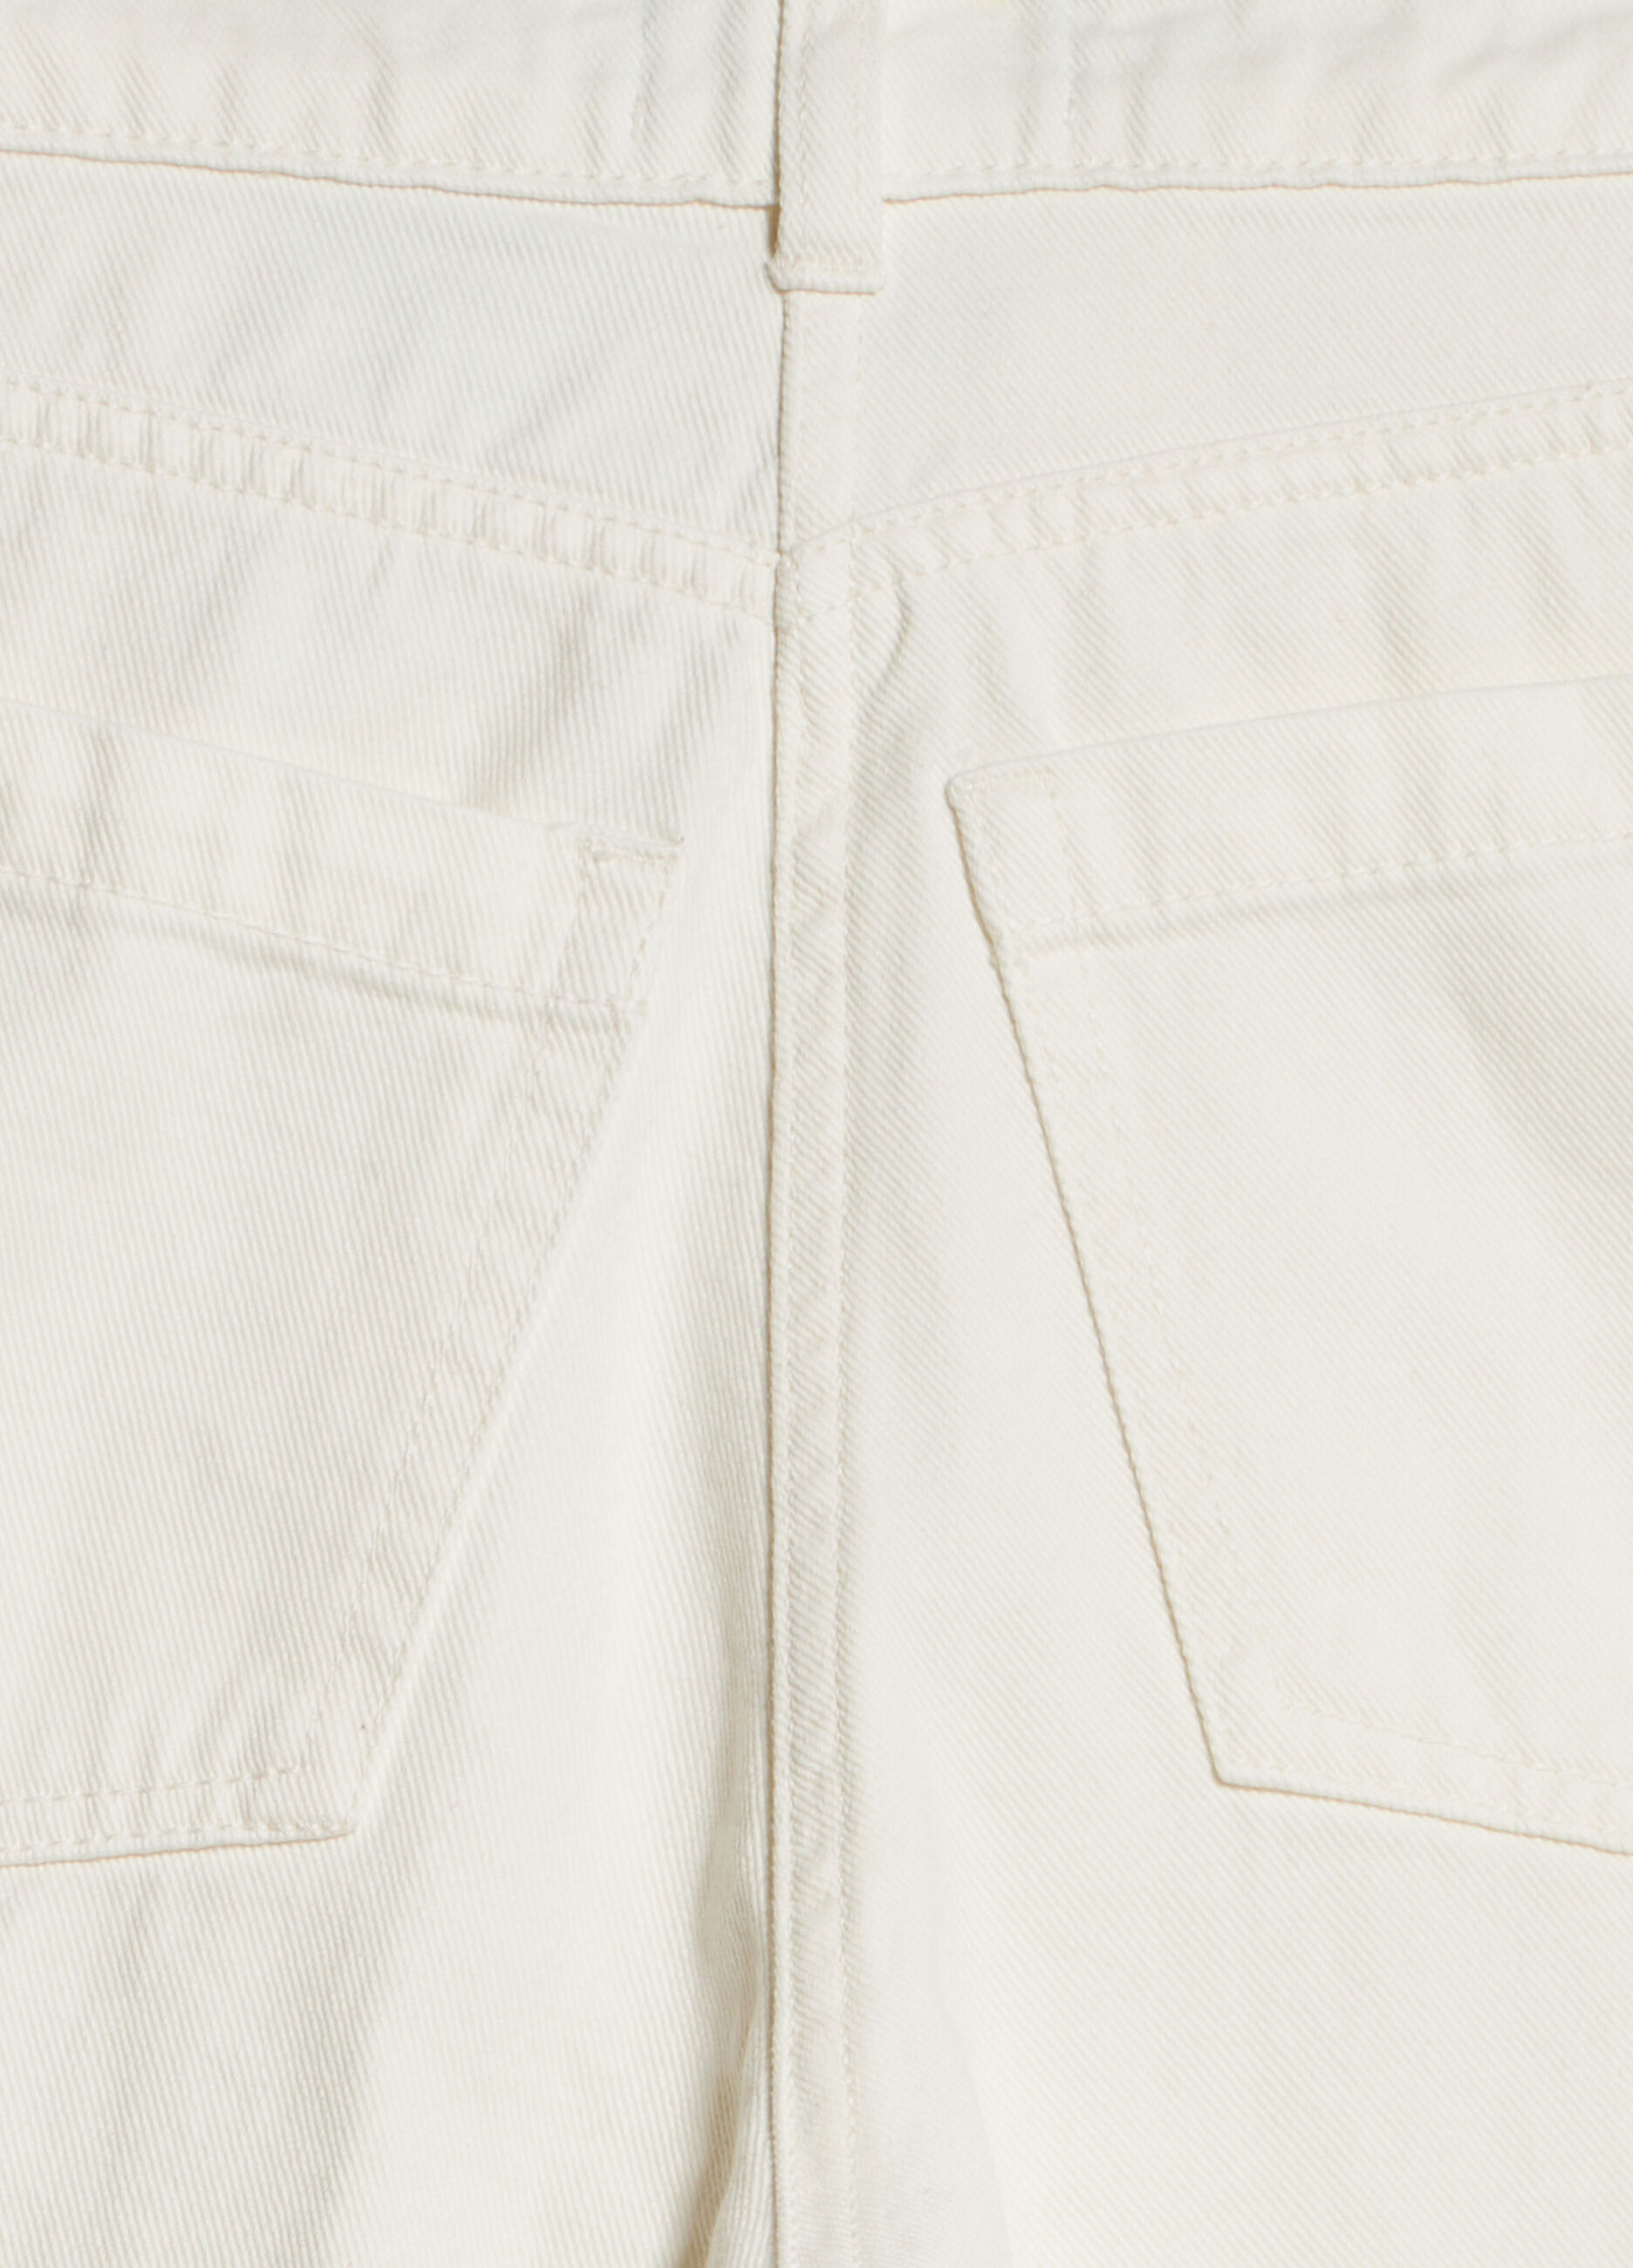 Cotton denim culotte style pants_7